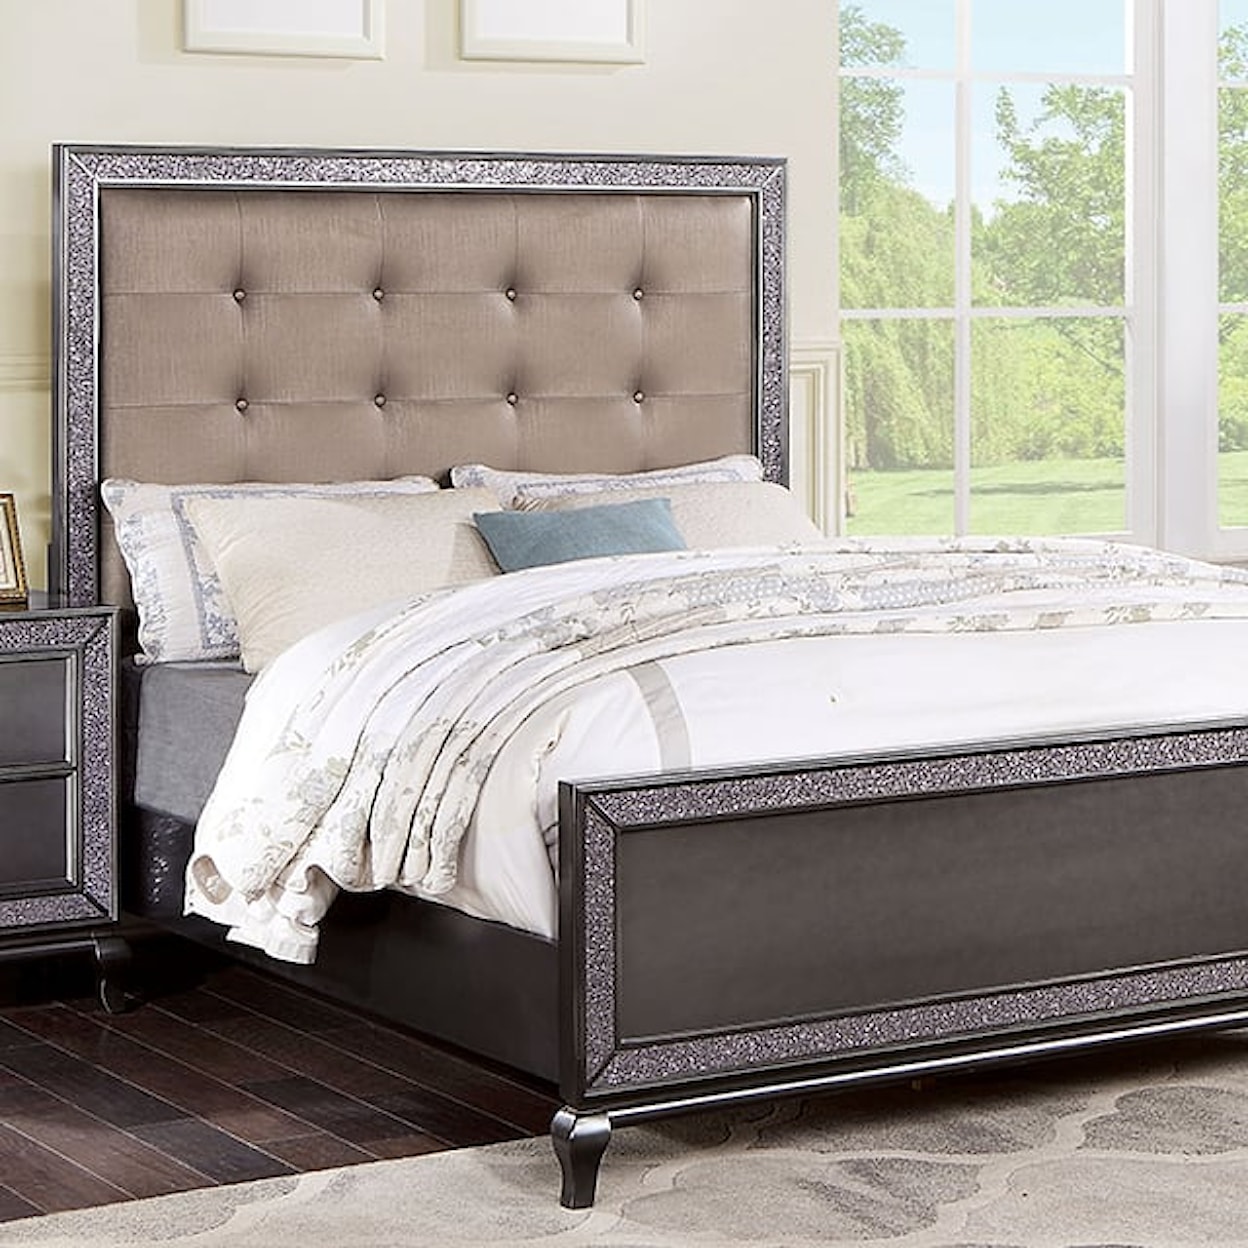 Furniture of America Onyxa 5-Piece Queen Bedroom Set